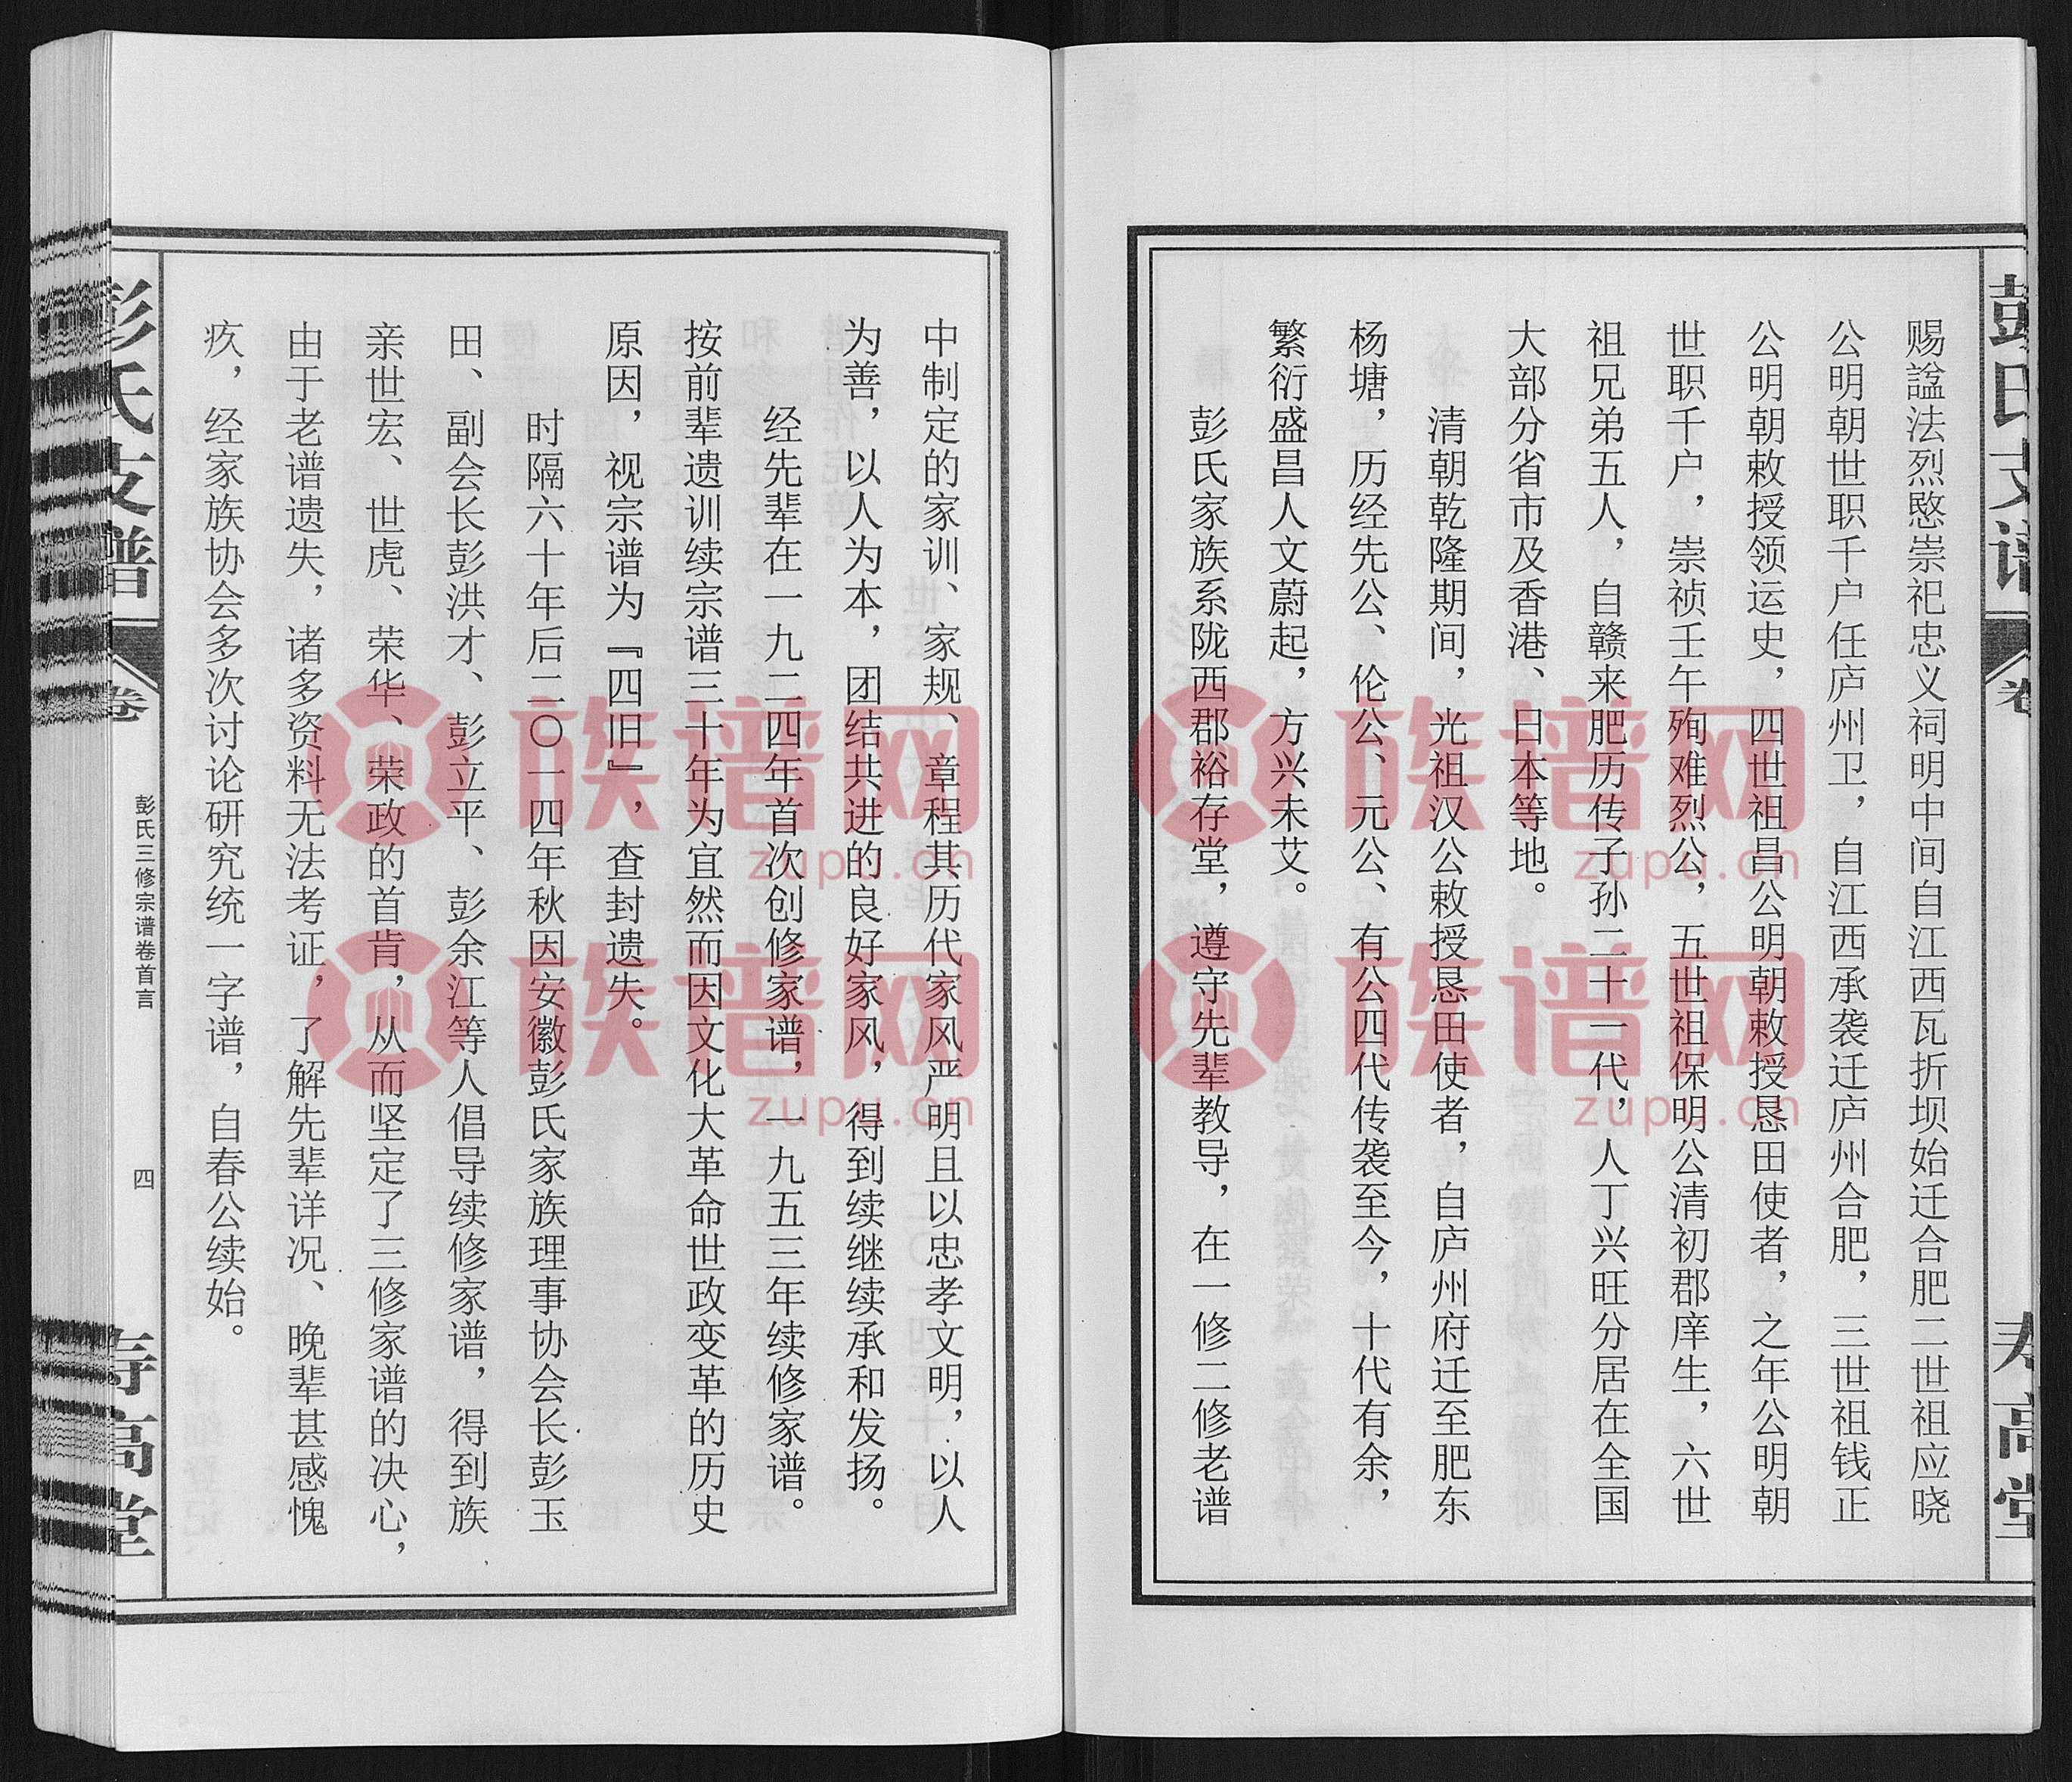 彭氏支谱, 1, 1369